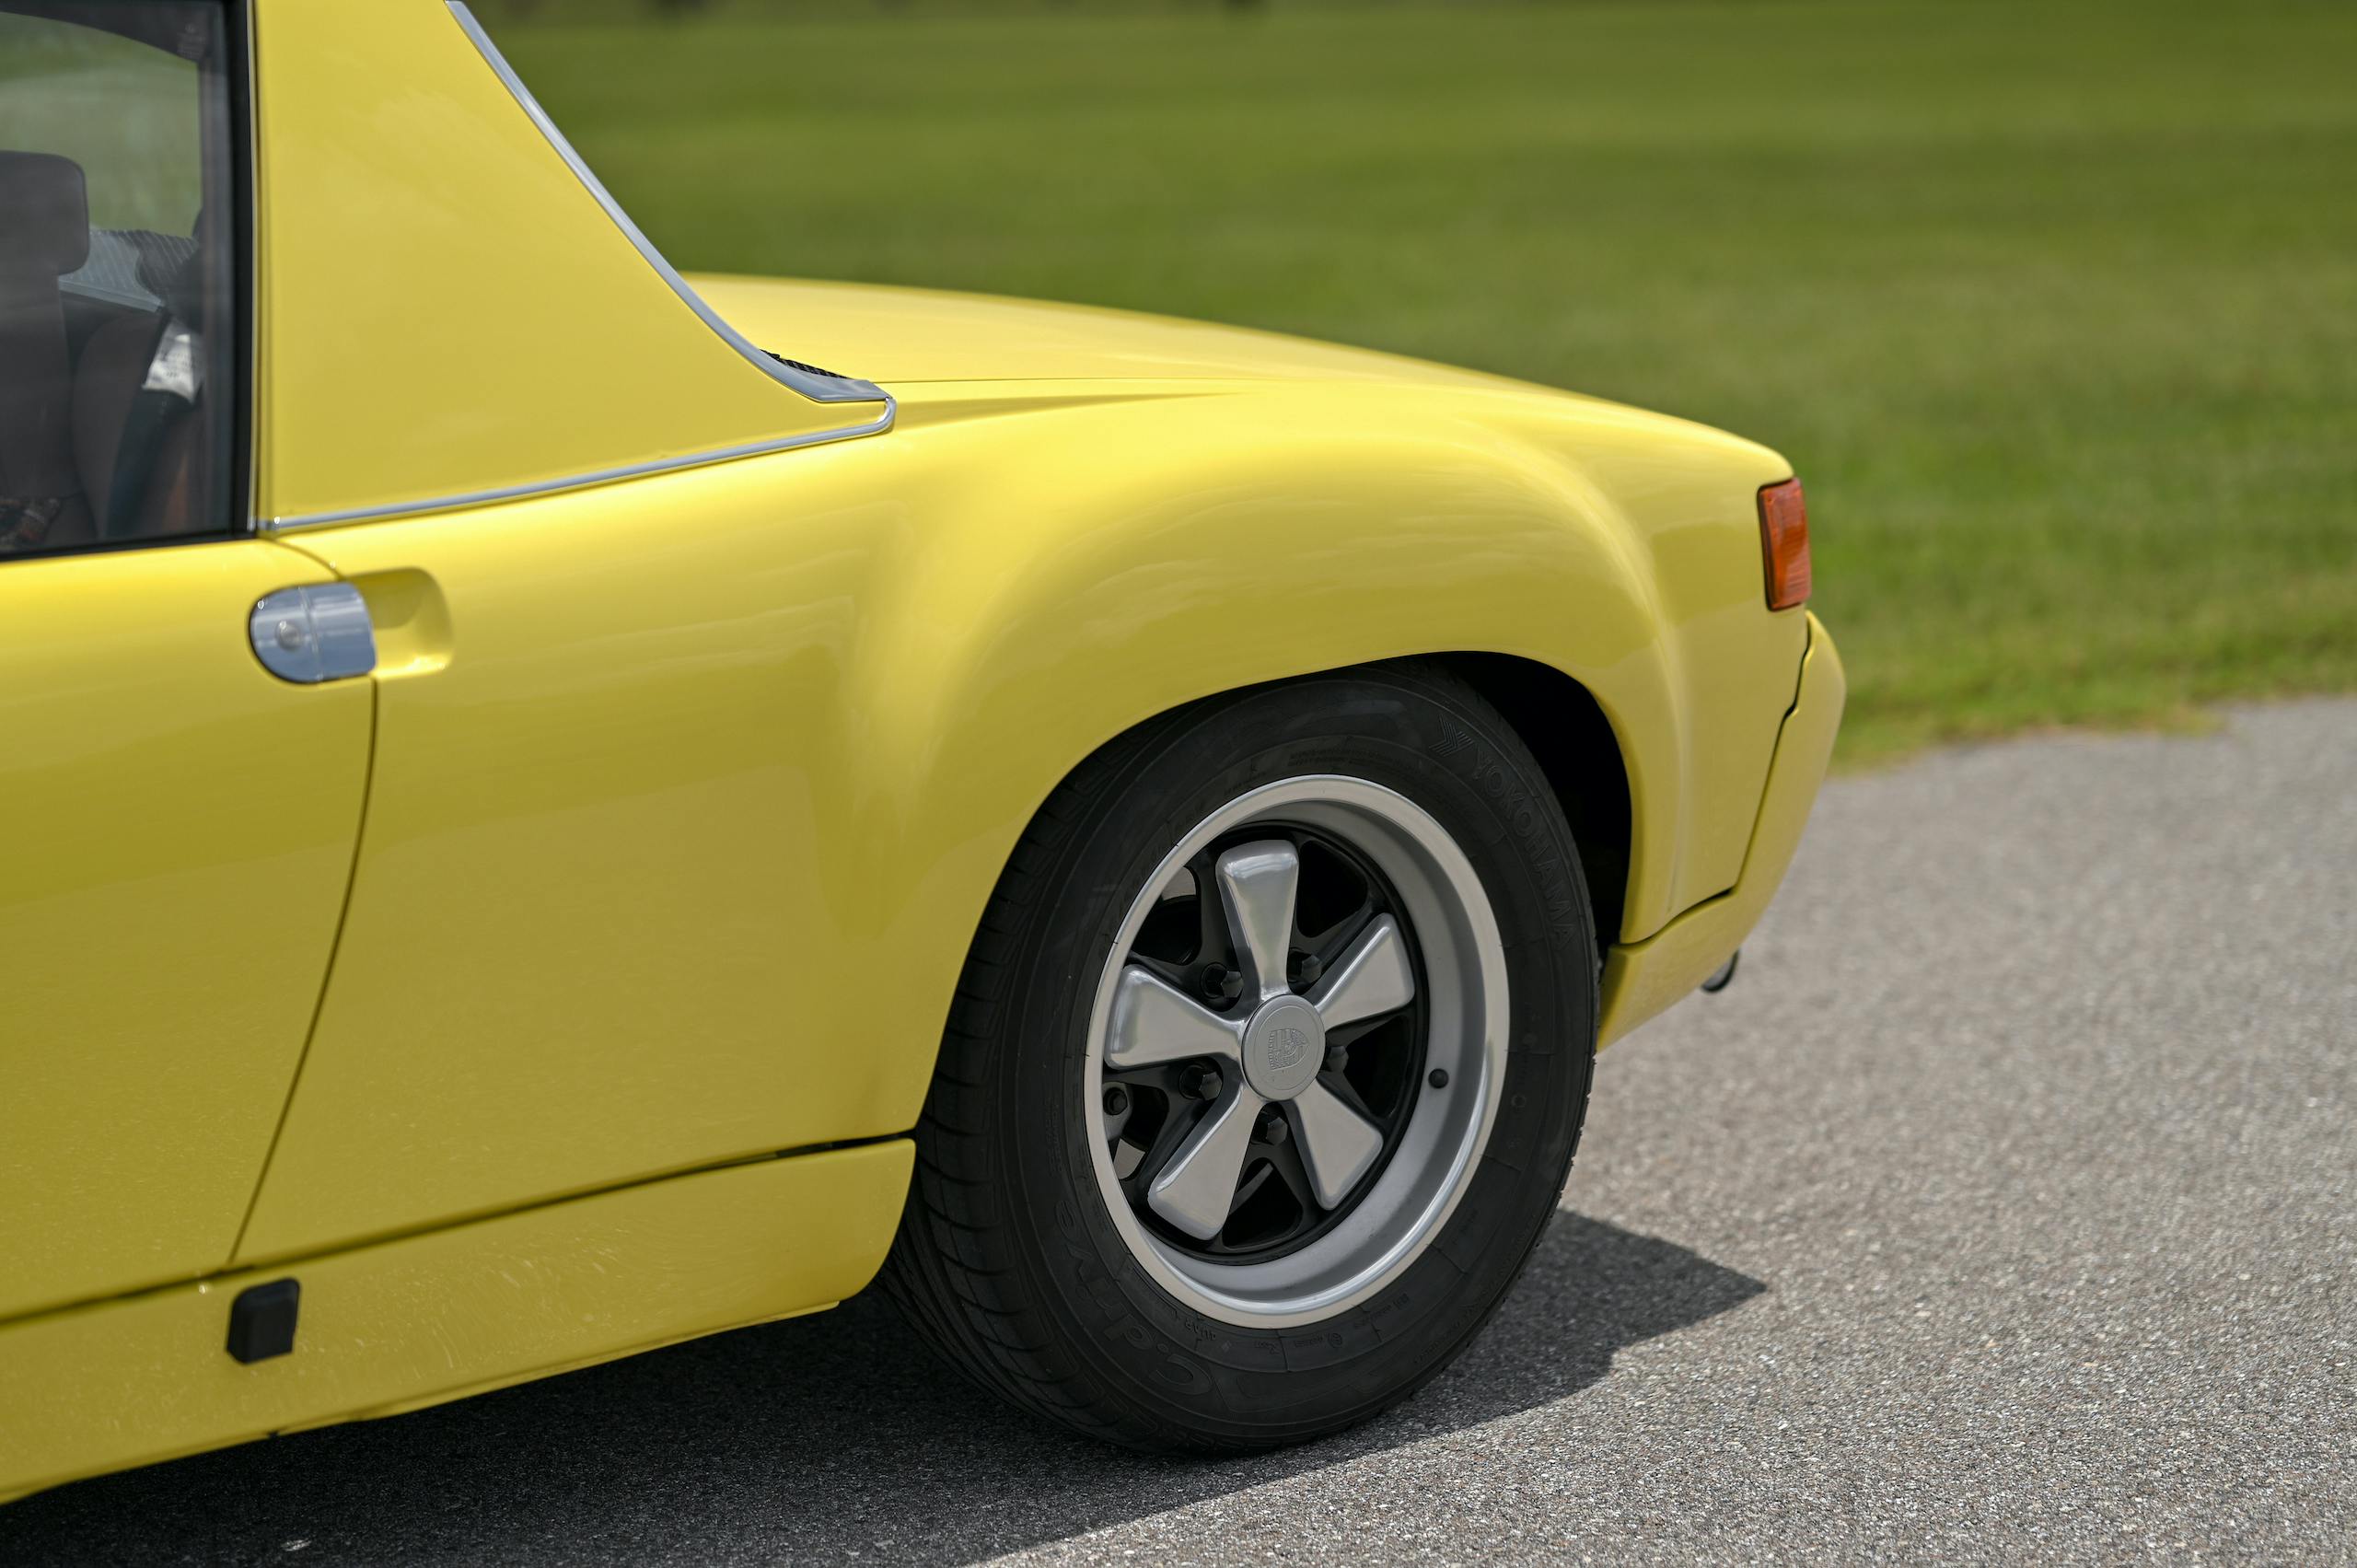 1972 Porsche 916 tire